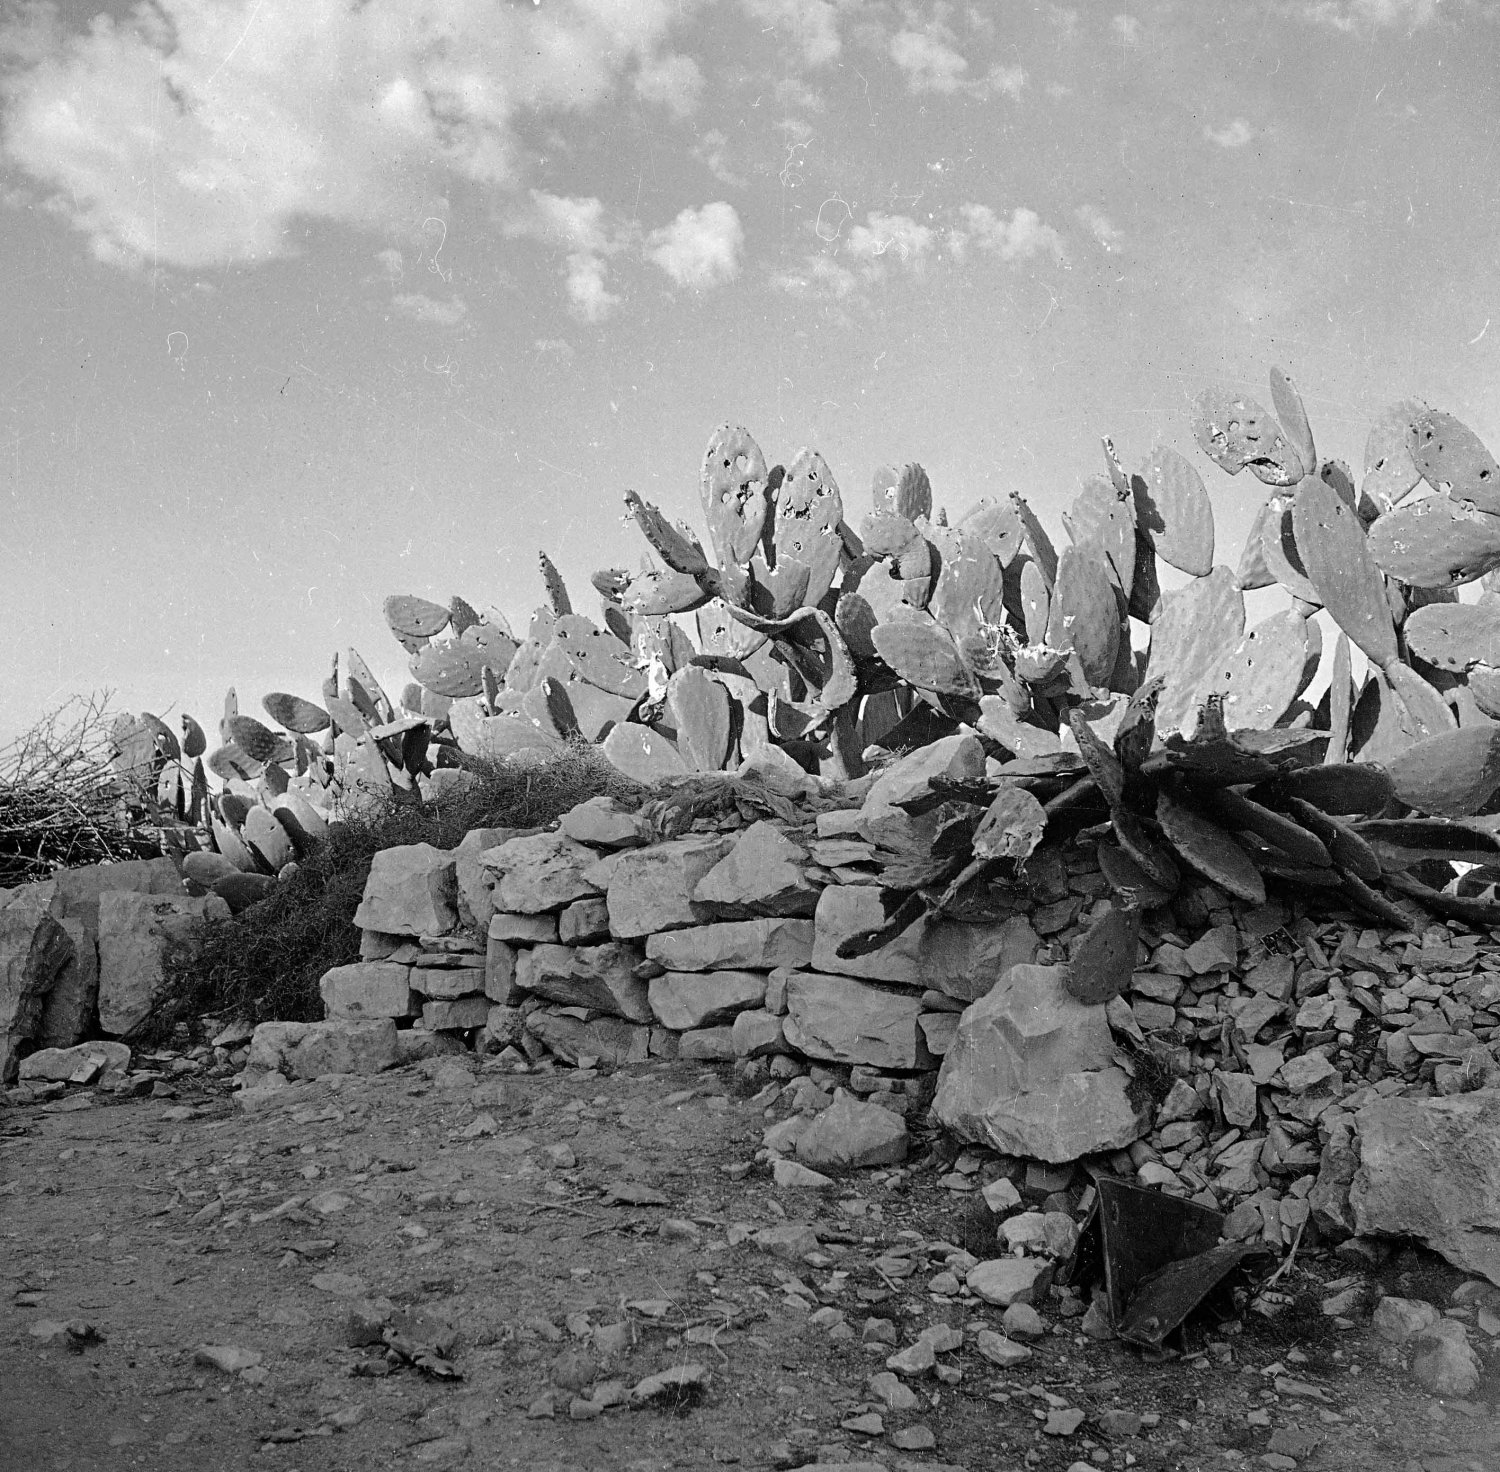 Bullet-riddled cactus (sabr) in the village of Deir Yasin just outside Jerusalem, 1948